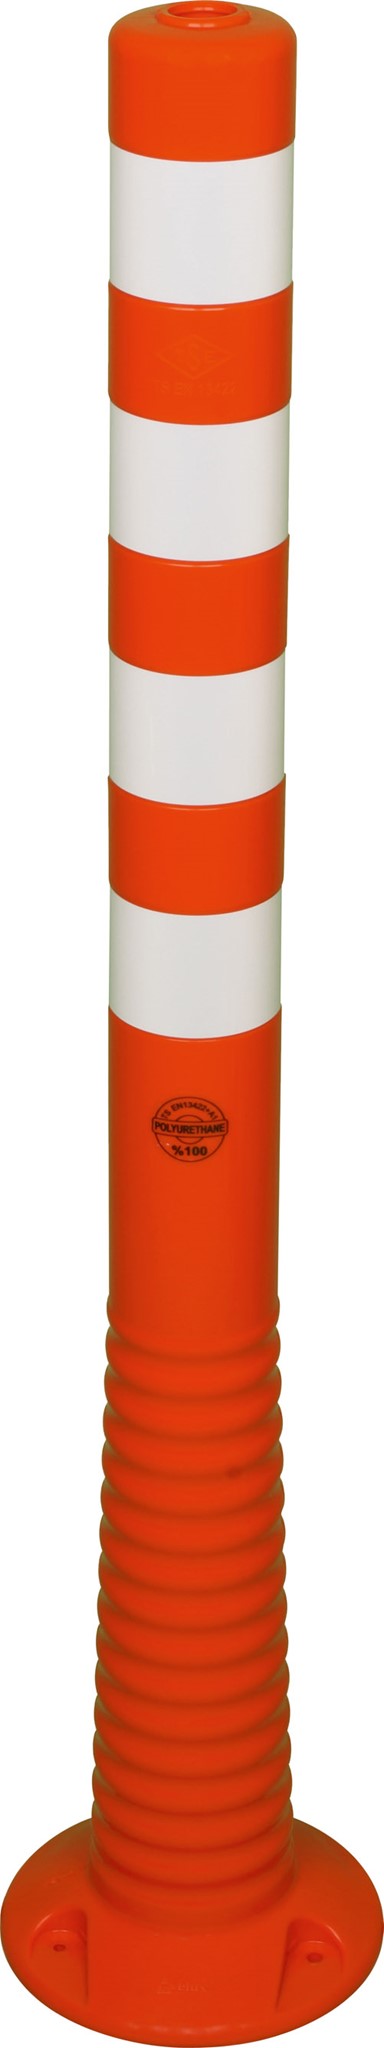 Bild von Flexipfosten 1000mm, Ø 80mm, orange